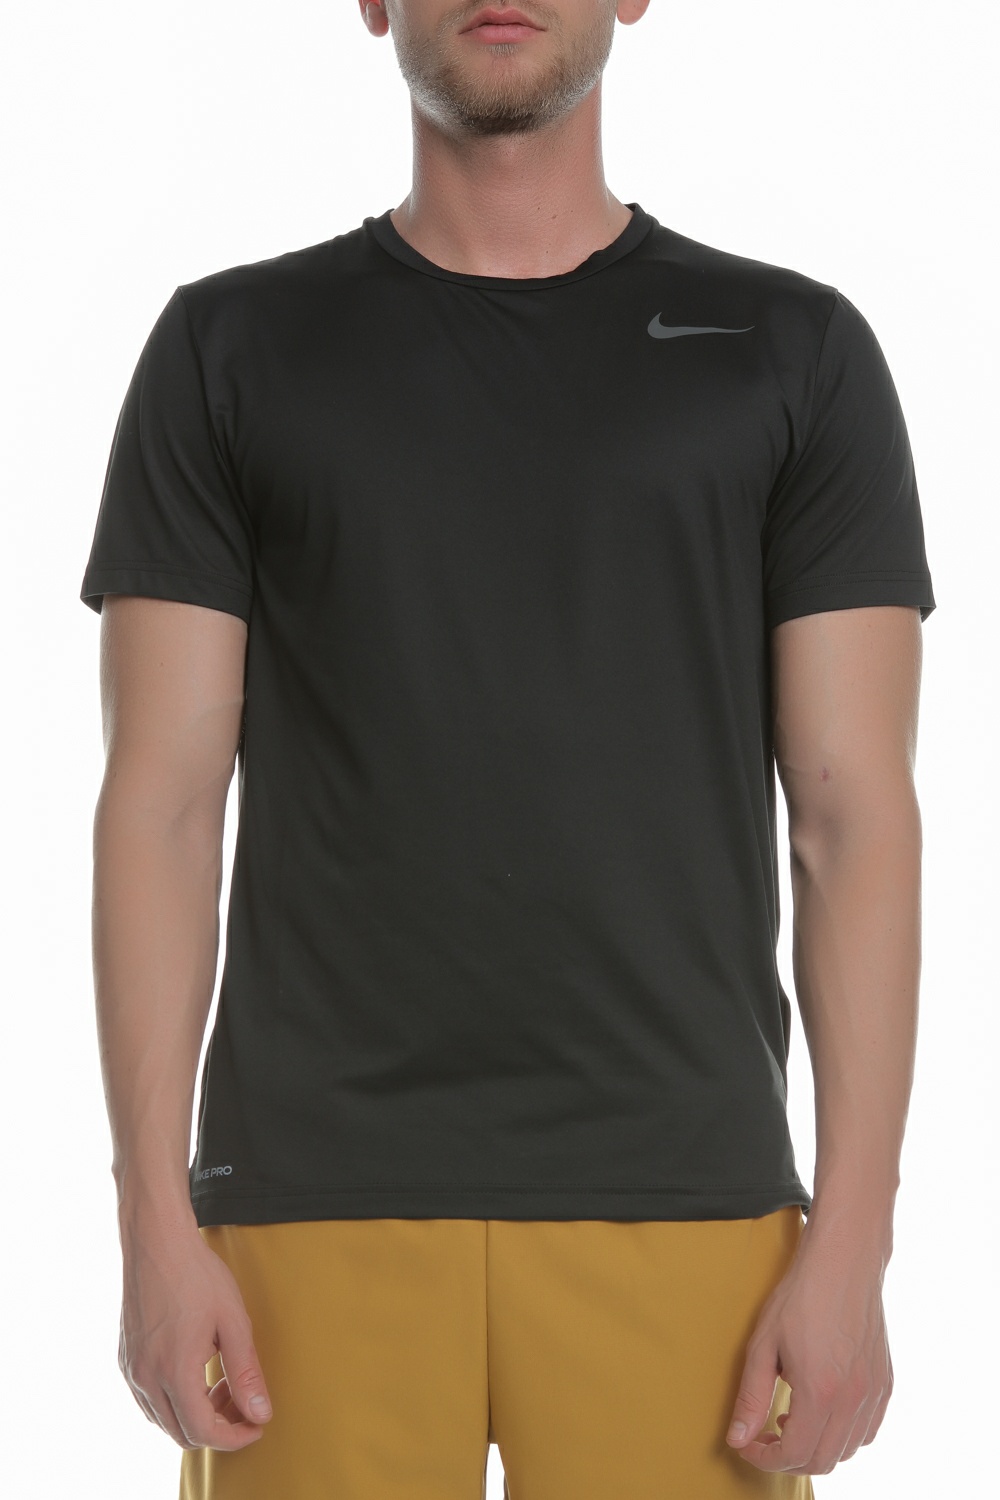 Ανδρικά/Ρούχα/Αθλητικά/T-shirt NIKE - Ανδρική μπλούζα NIKE SS HPR DRY μαύρη